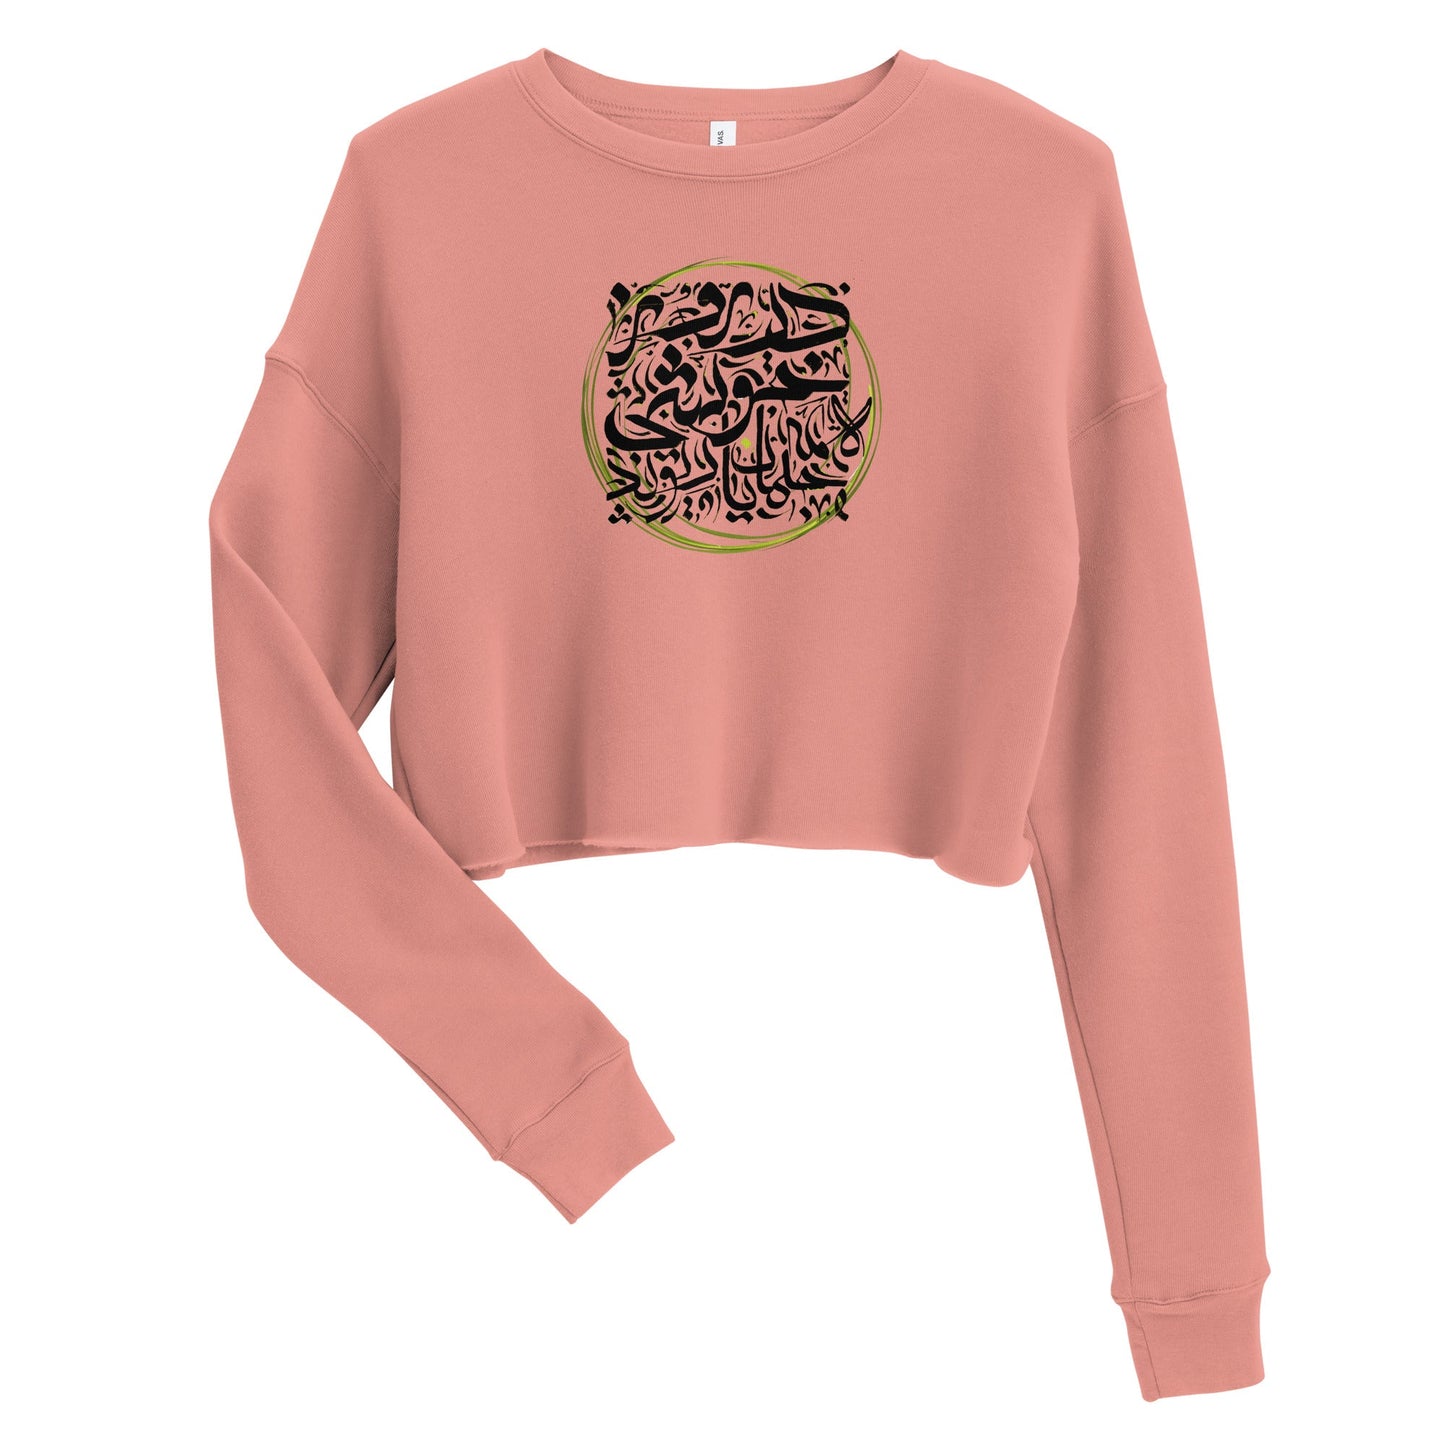 HAPPY DAY Women's Crop Sweatshirt - Bonotee